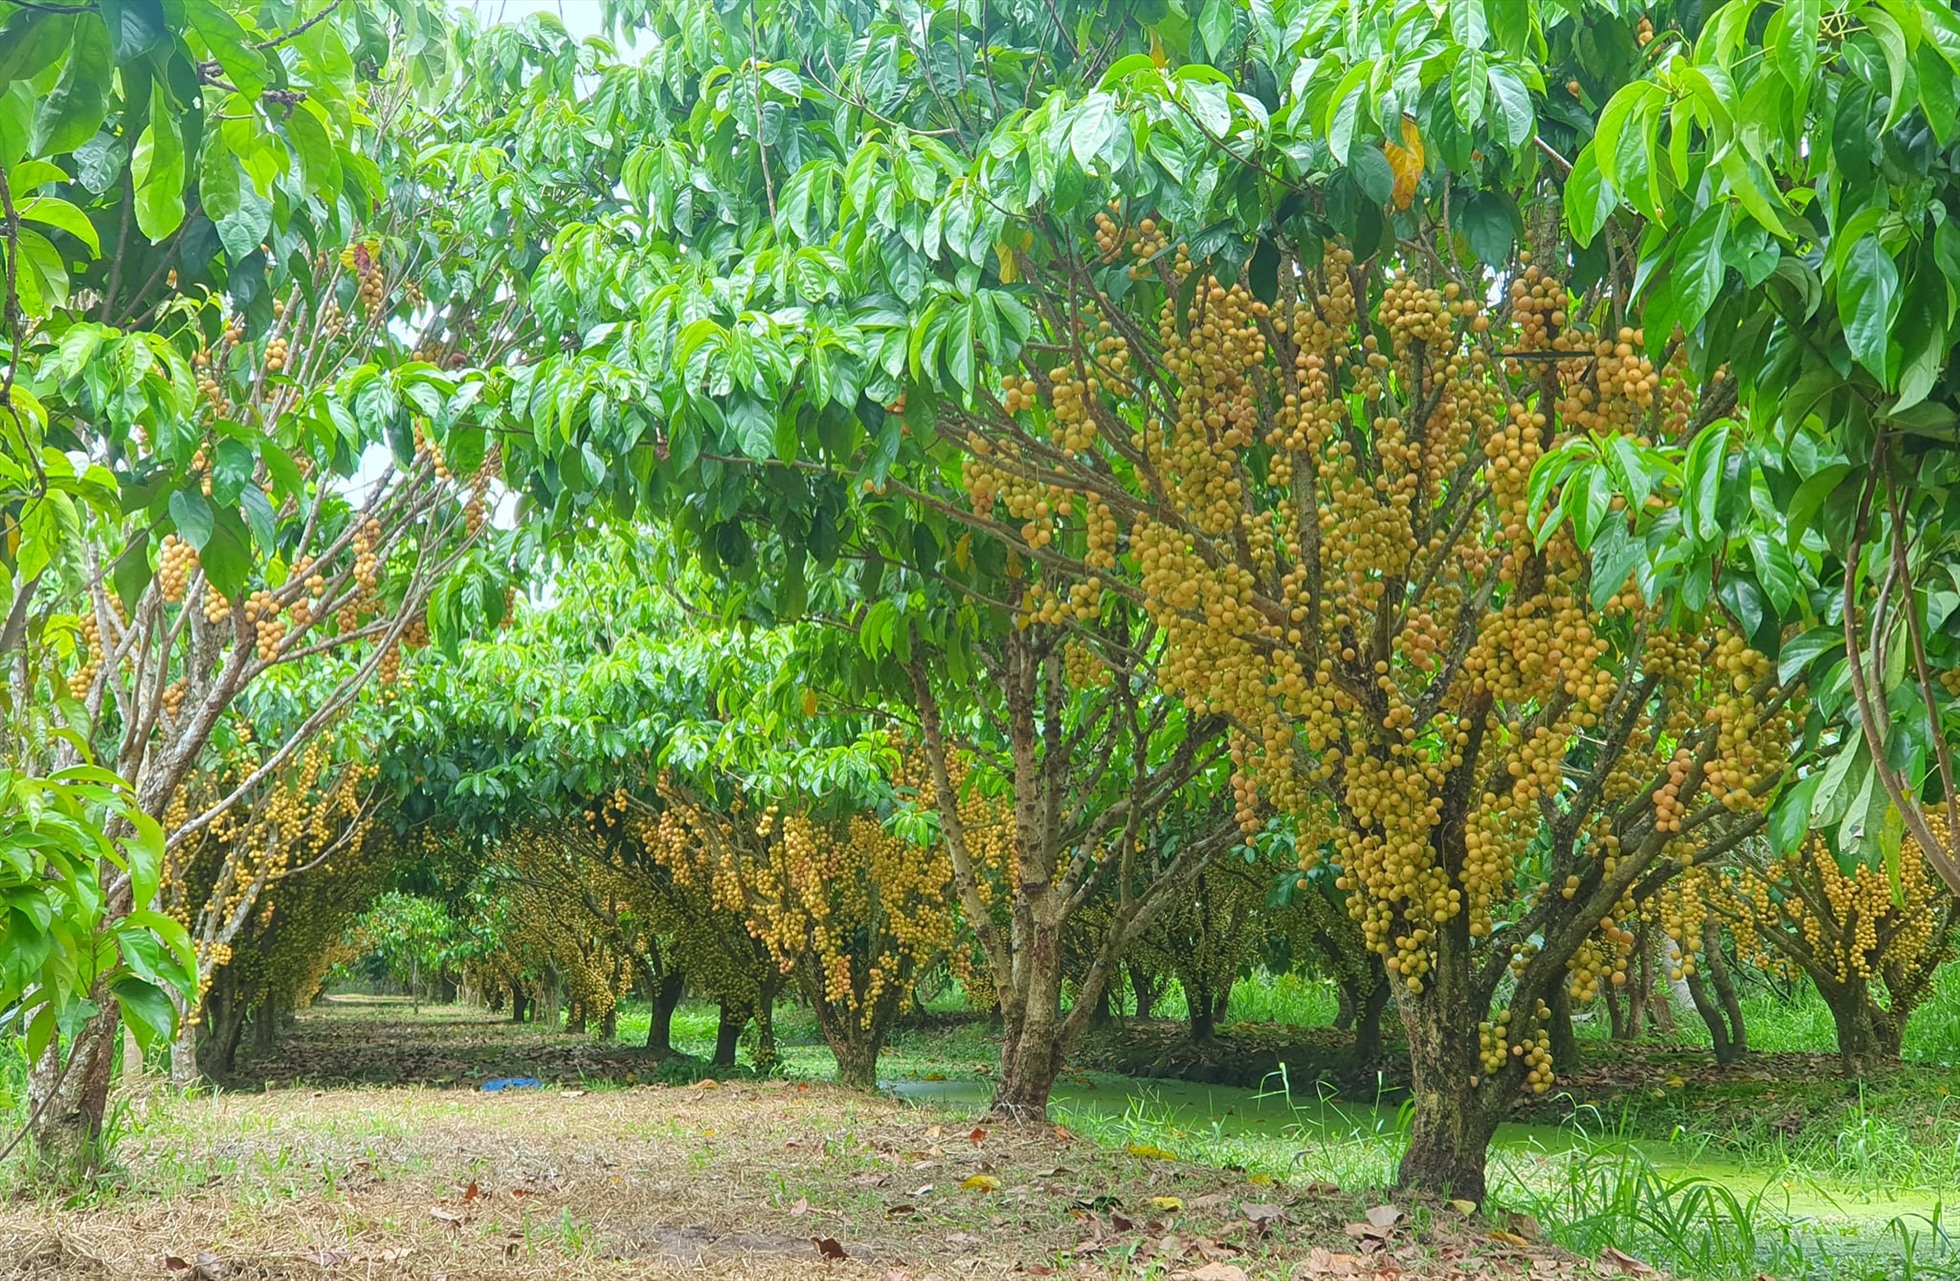 Dâu da vàng từ khi trồng đến cho quả khoảng 3 - 4 năm, nhưng về sau thì trái sẽ sai hơn. Khi hết mùa khách tham quan, chủ vườn mới bẻ trái bán cho thương lái, giá dao động từ 10.000 - 20.000 đồng/kg.